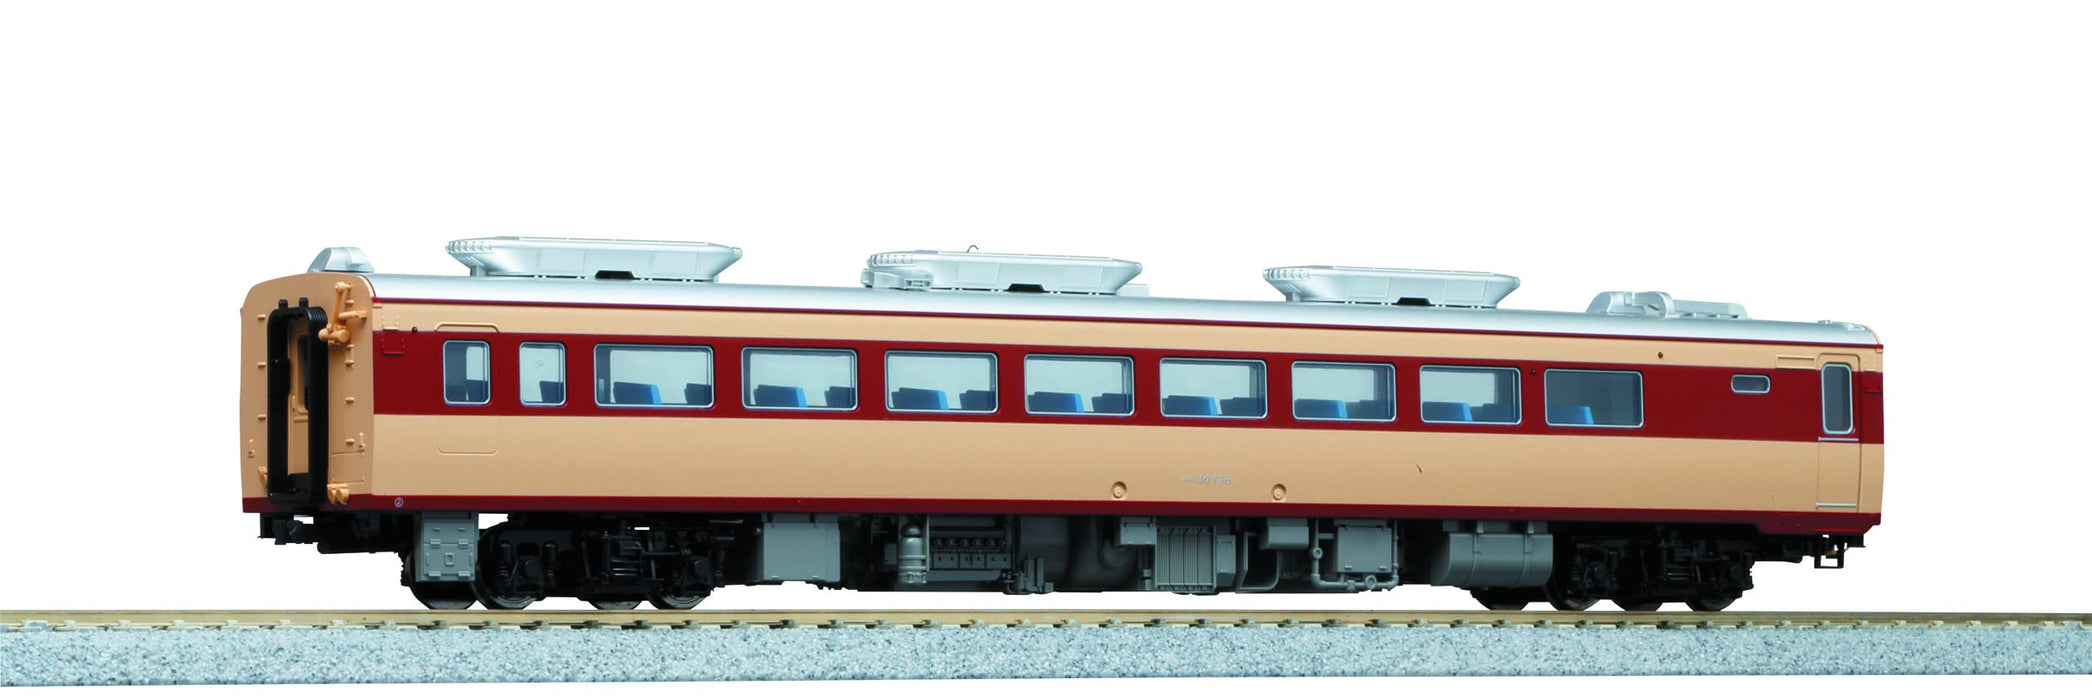 Kato Diesel Railway Model Car Ho Gauge Kiha80 M 1-611